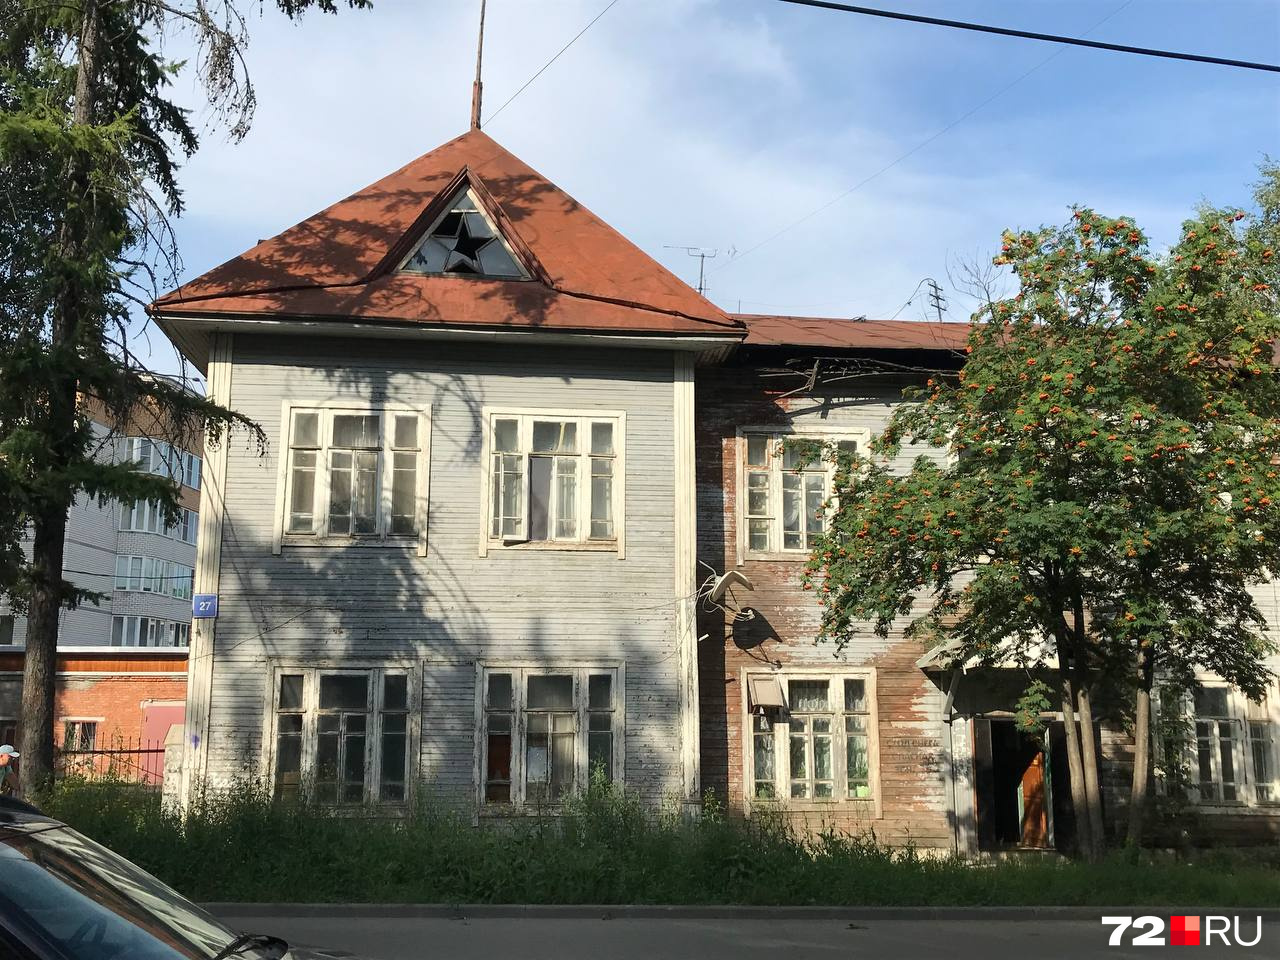 Большинство старых деревянных зданий в Сыктывкаре так или иначе имели связь с лагерями, действовавшими при СССР